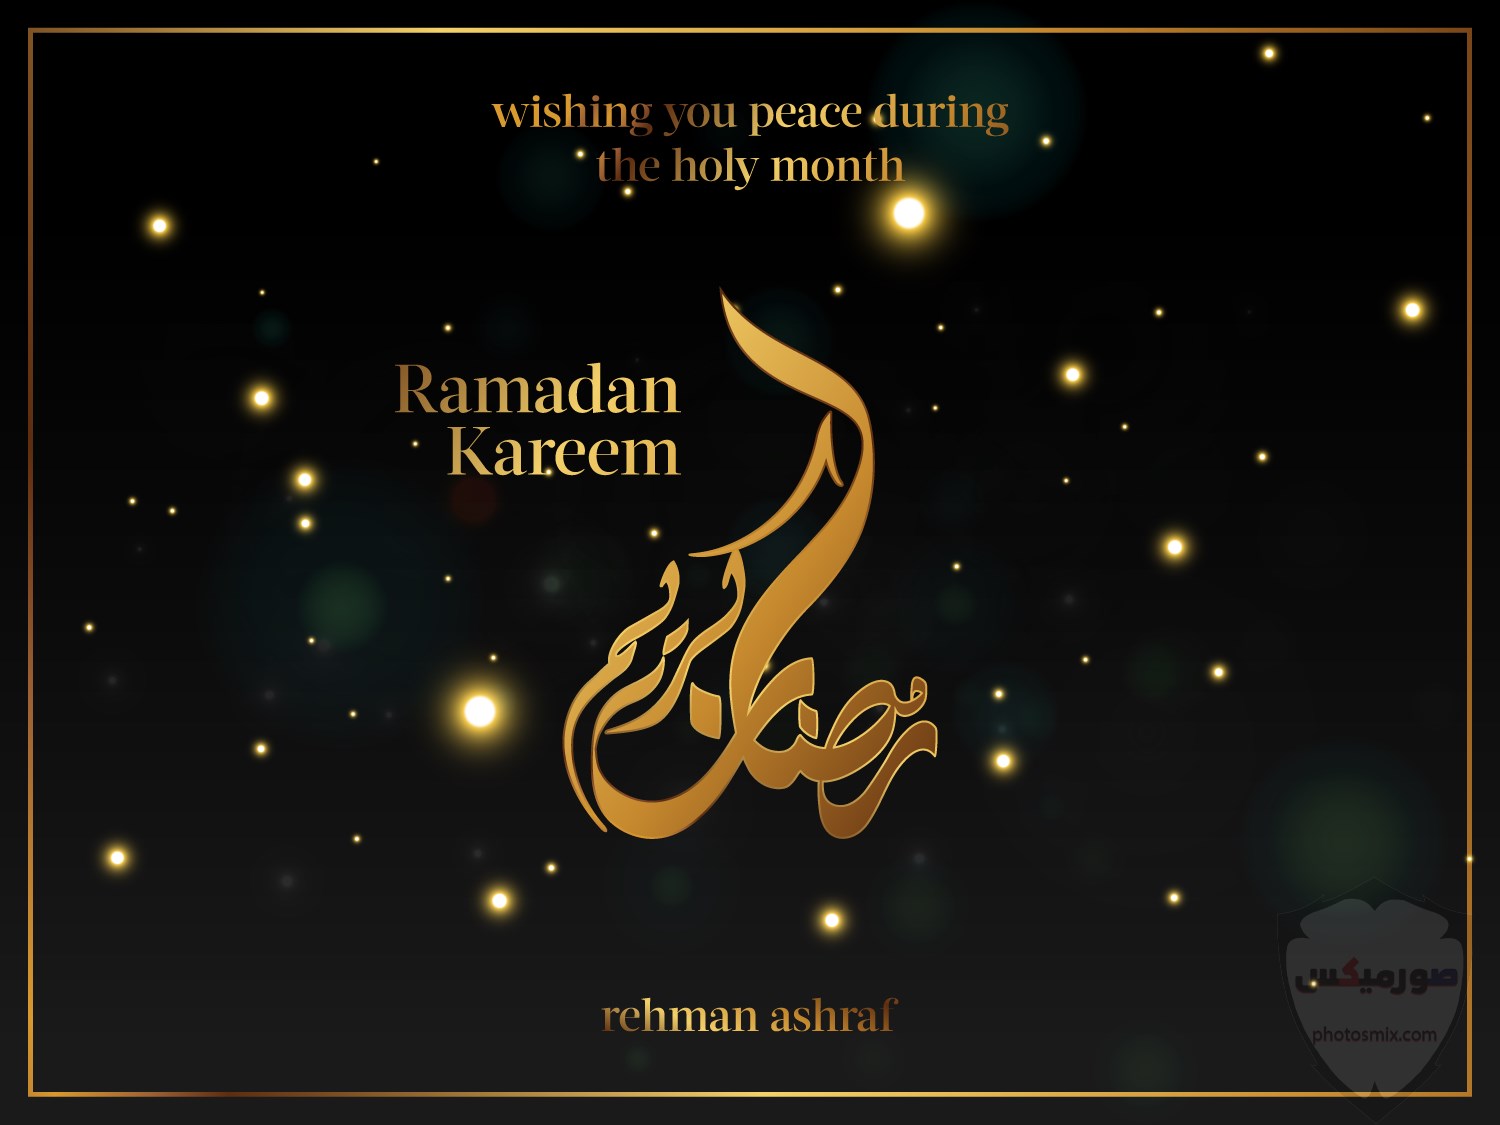 صور رمضان 2020 صور اهلا رمضان 2020 صور ادعية رمضانية 2